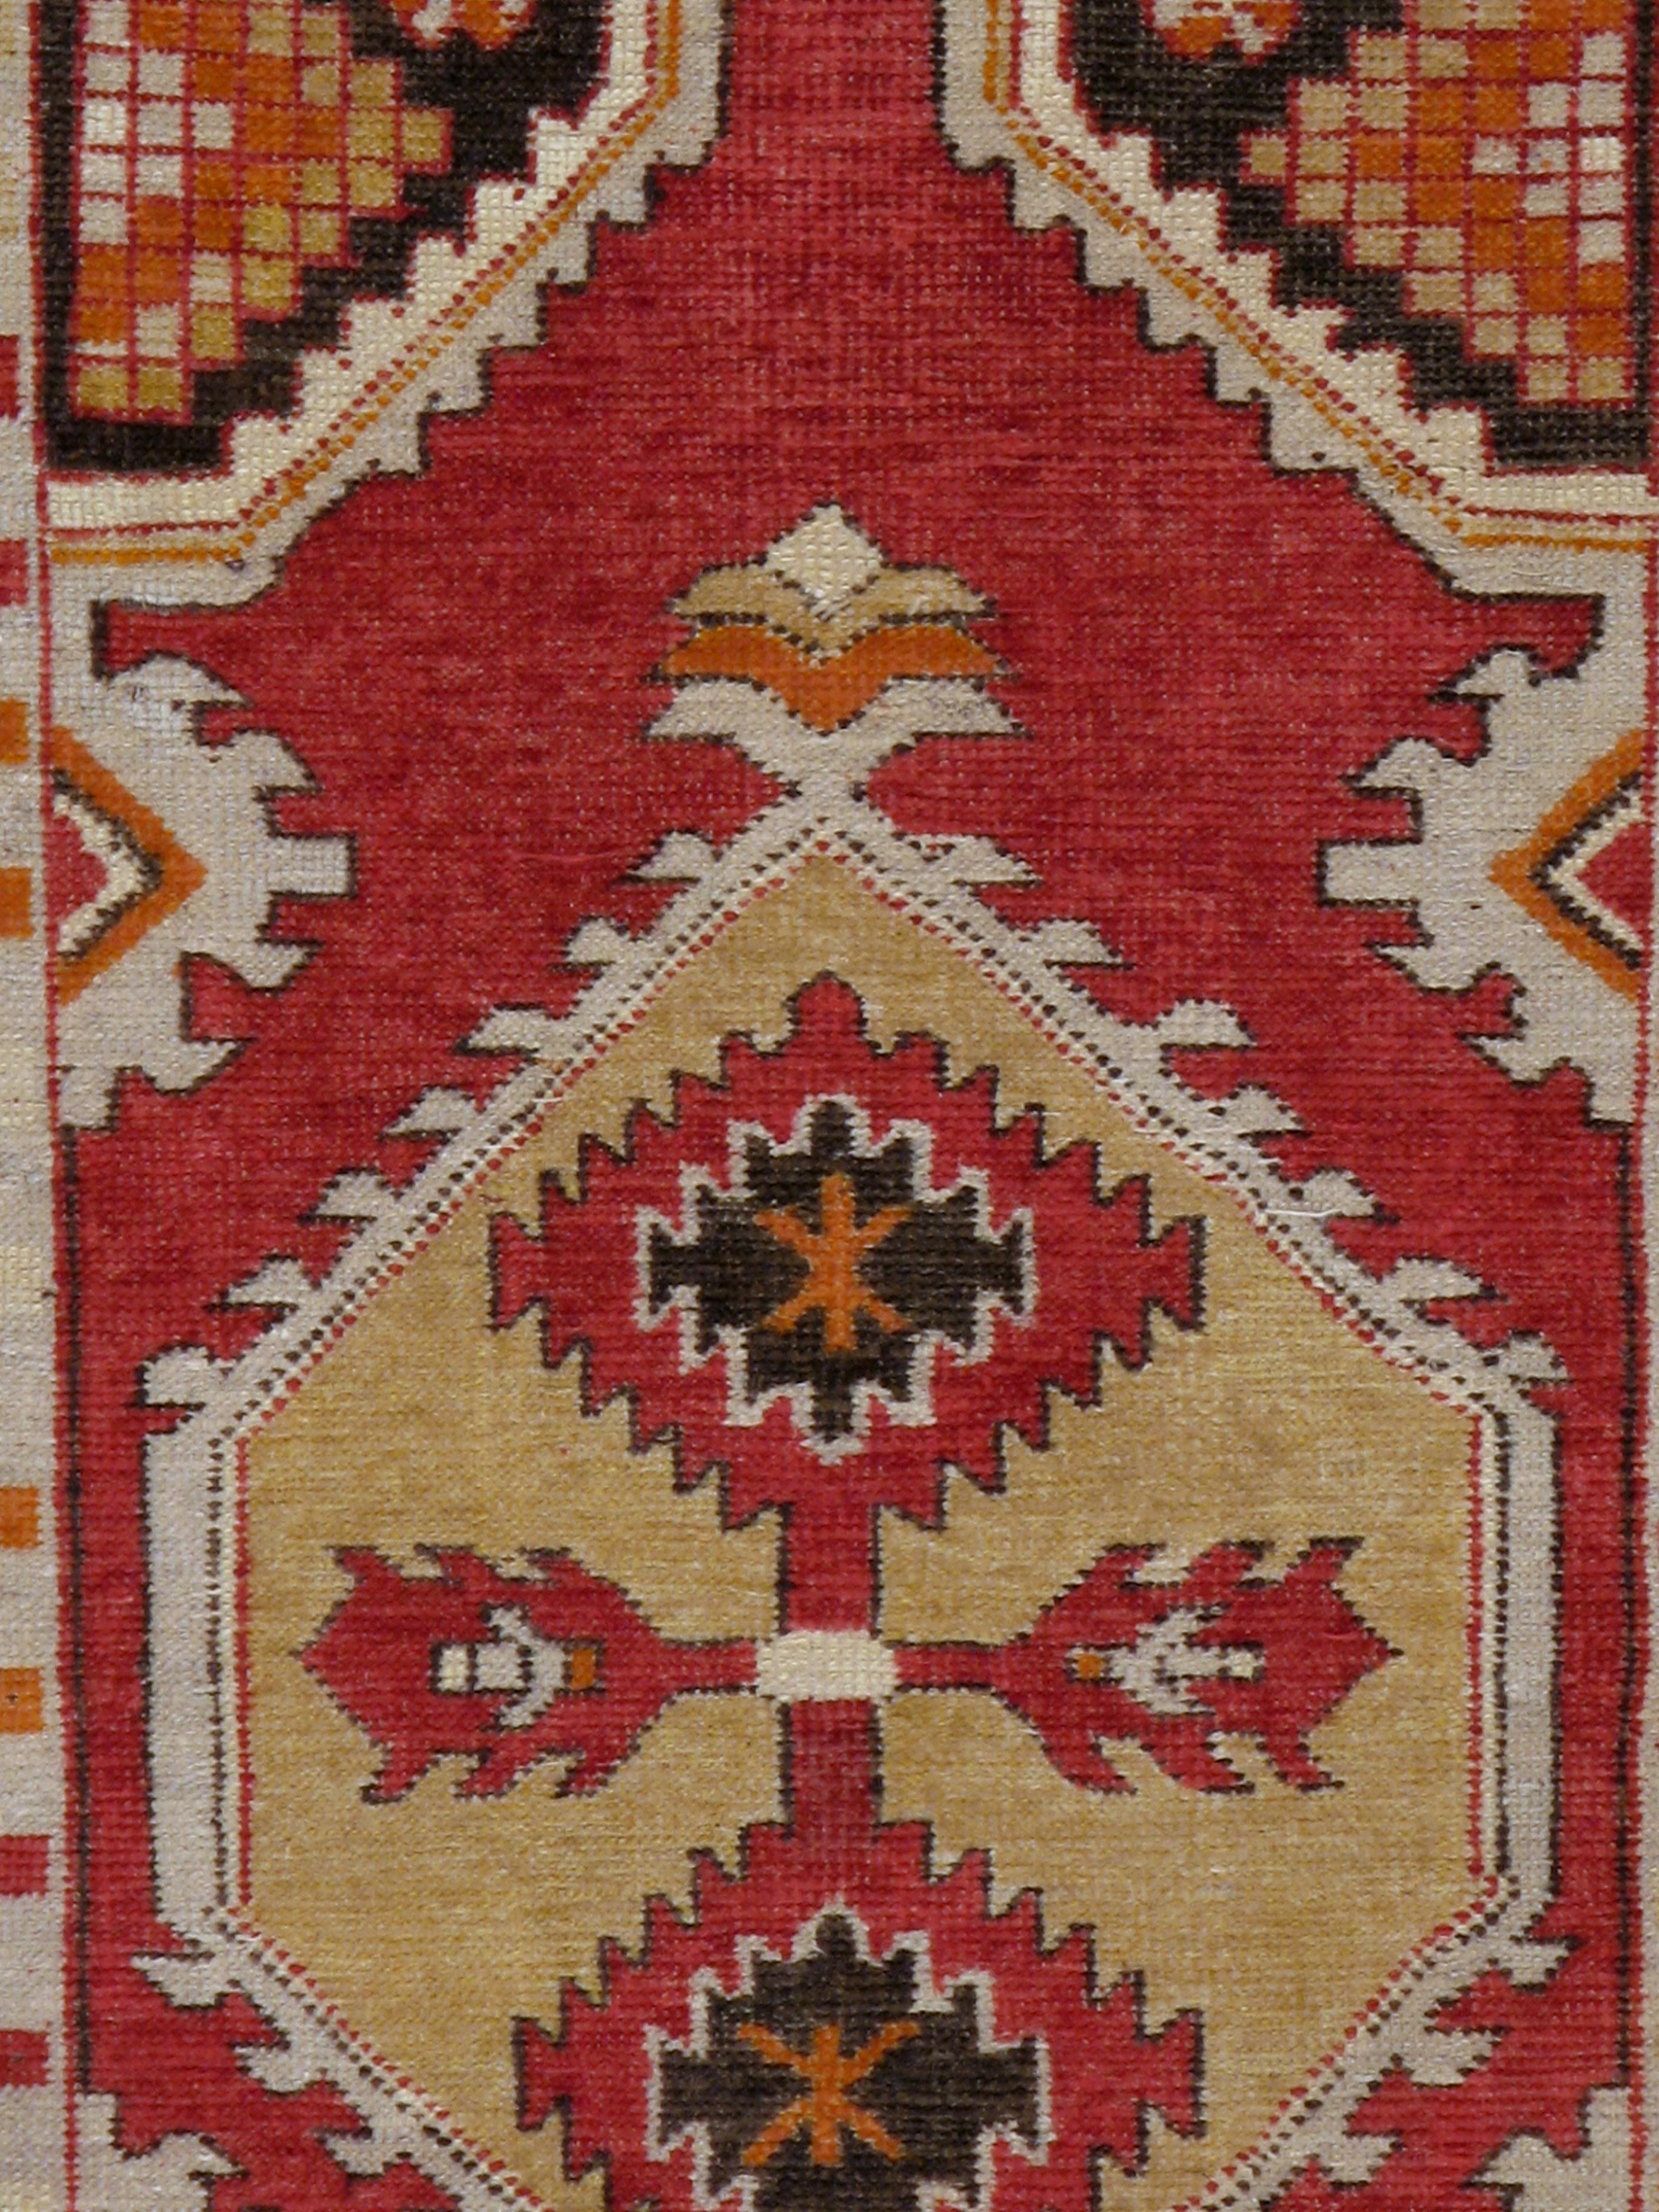 Ein alter türkischer Oushak-Teppich aus der Mitte des 20. Jahrhunderts mit rotem Feld und elfenbeinfarbener Bordüre.

Maße: 2' 8